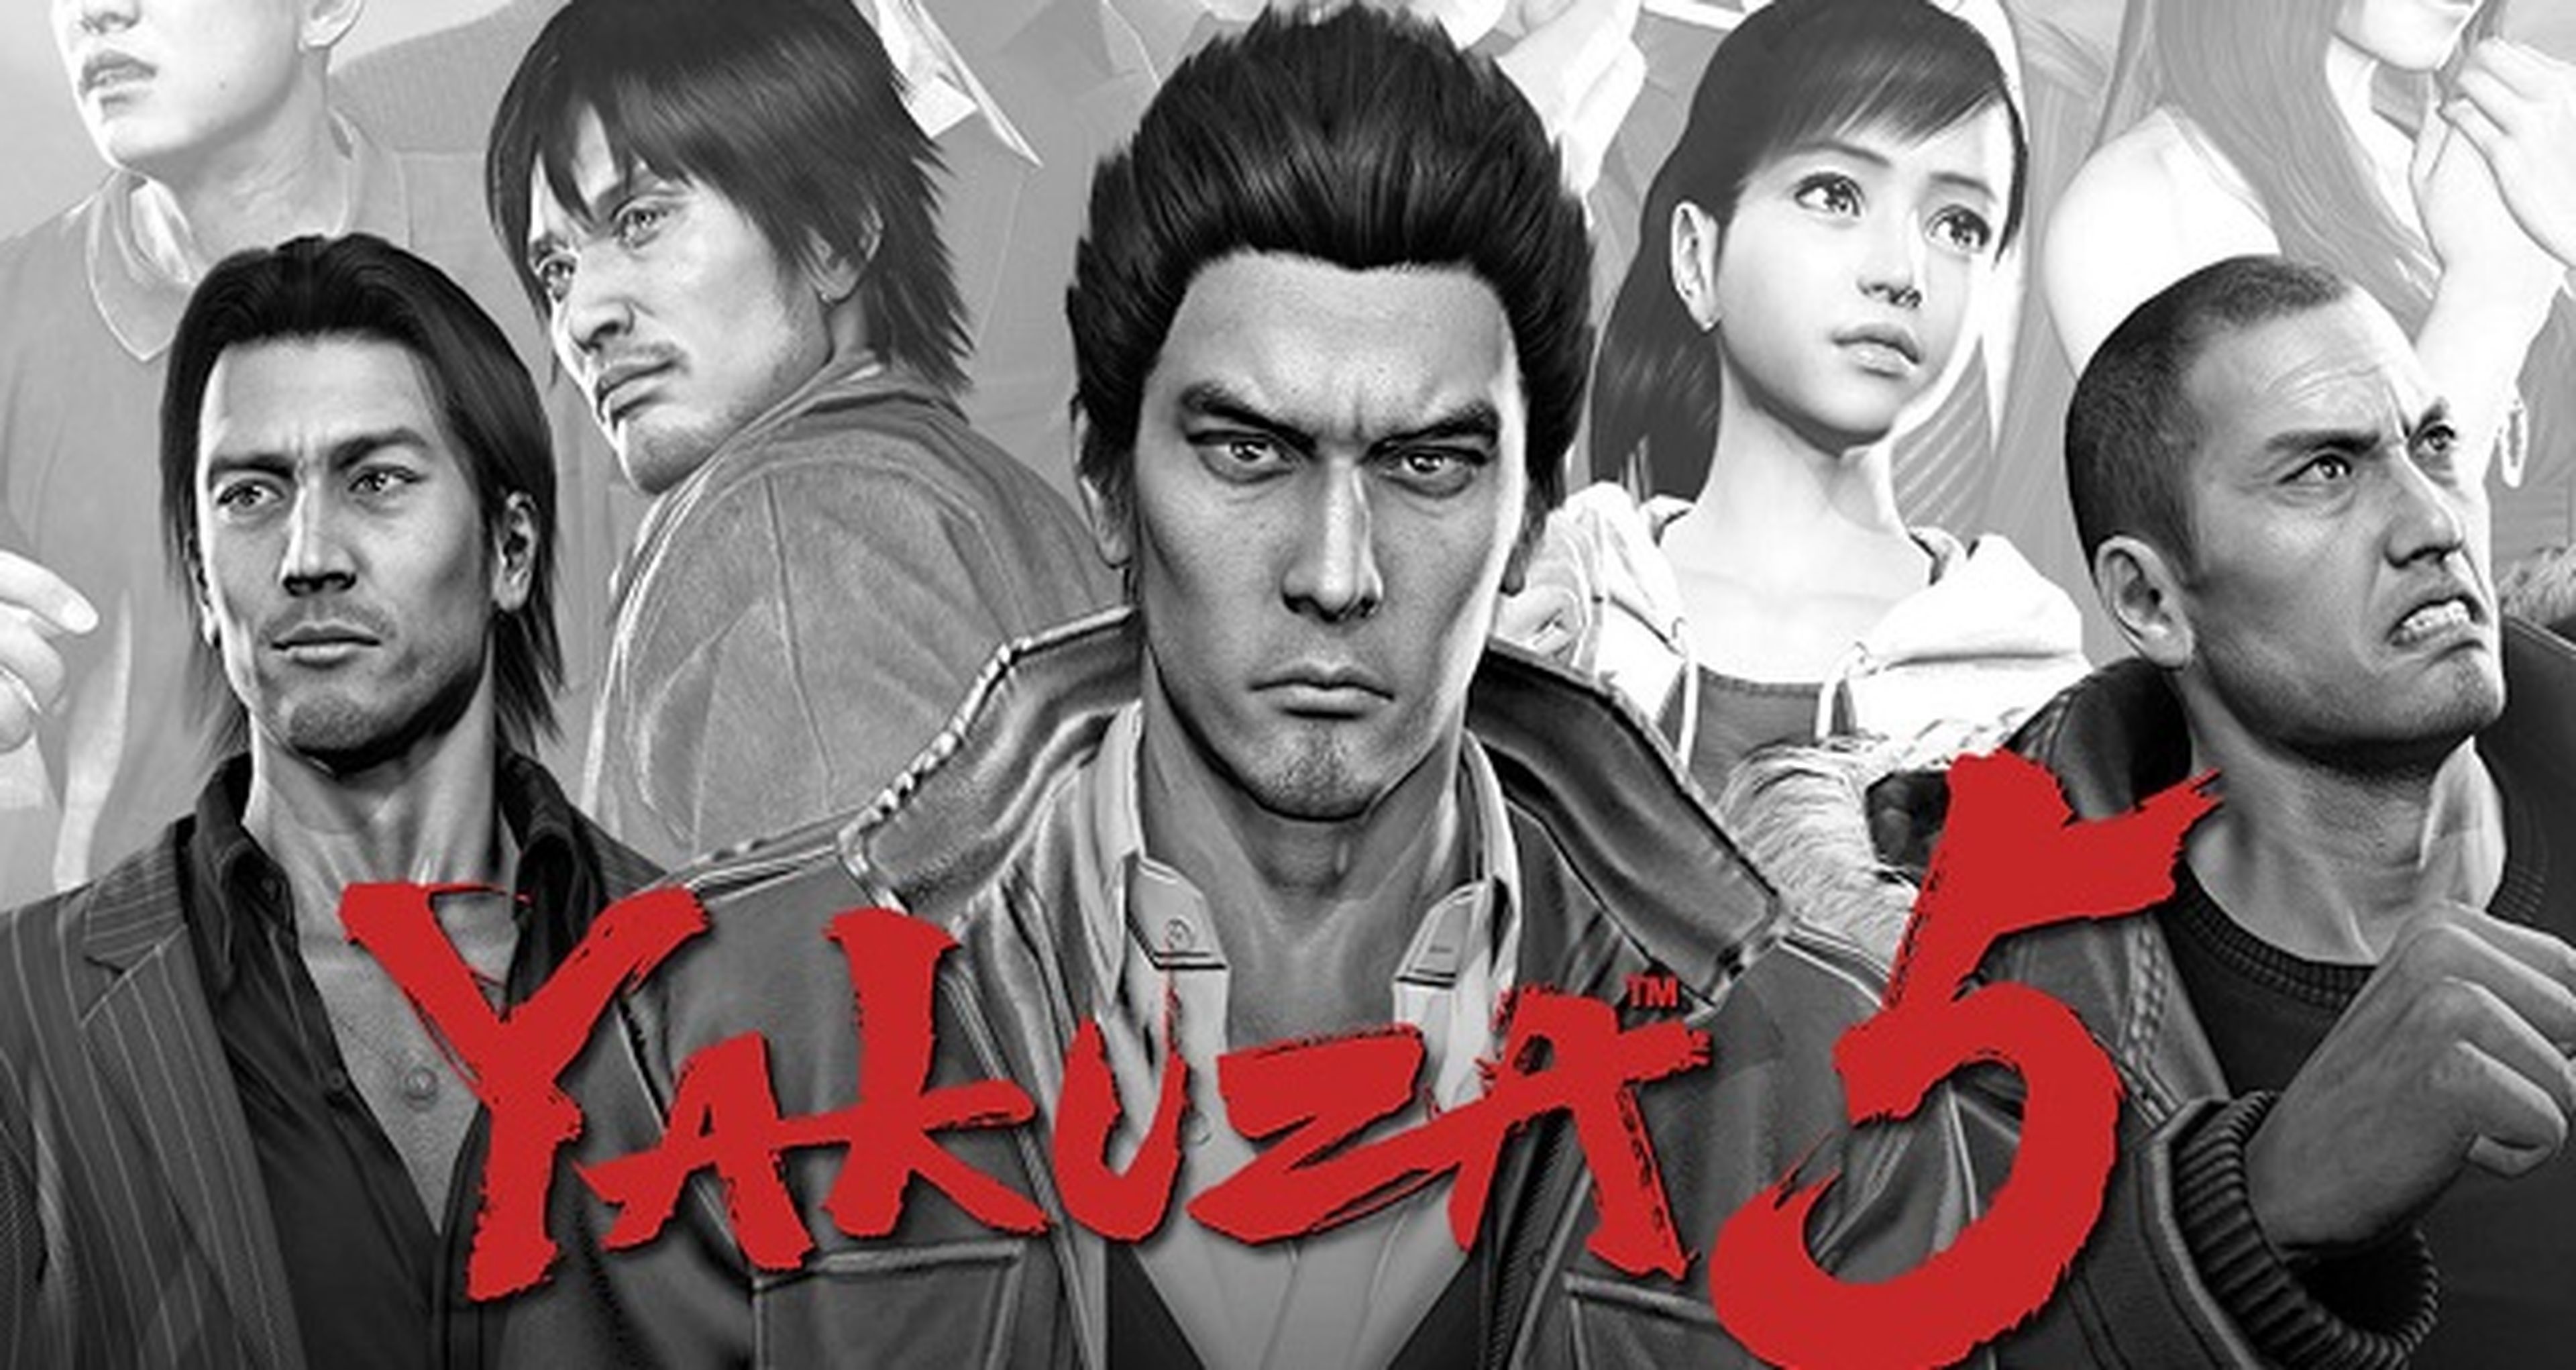 PS4 - Yakuza Kiwami - Fisico - Nuevo – Gamer 4 Ever